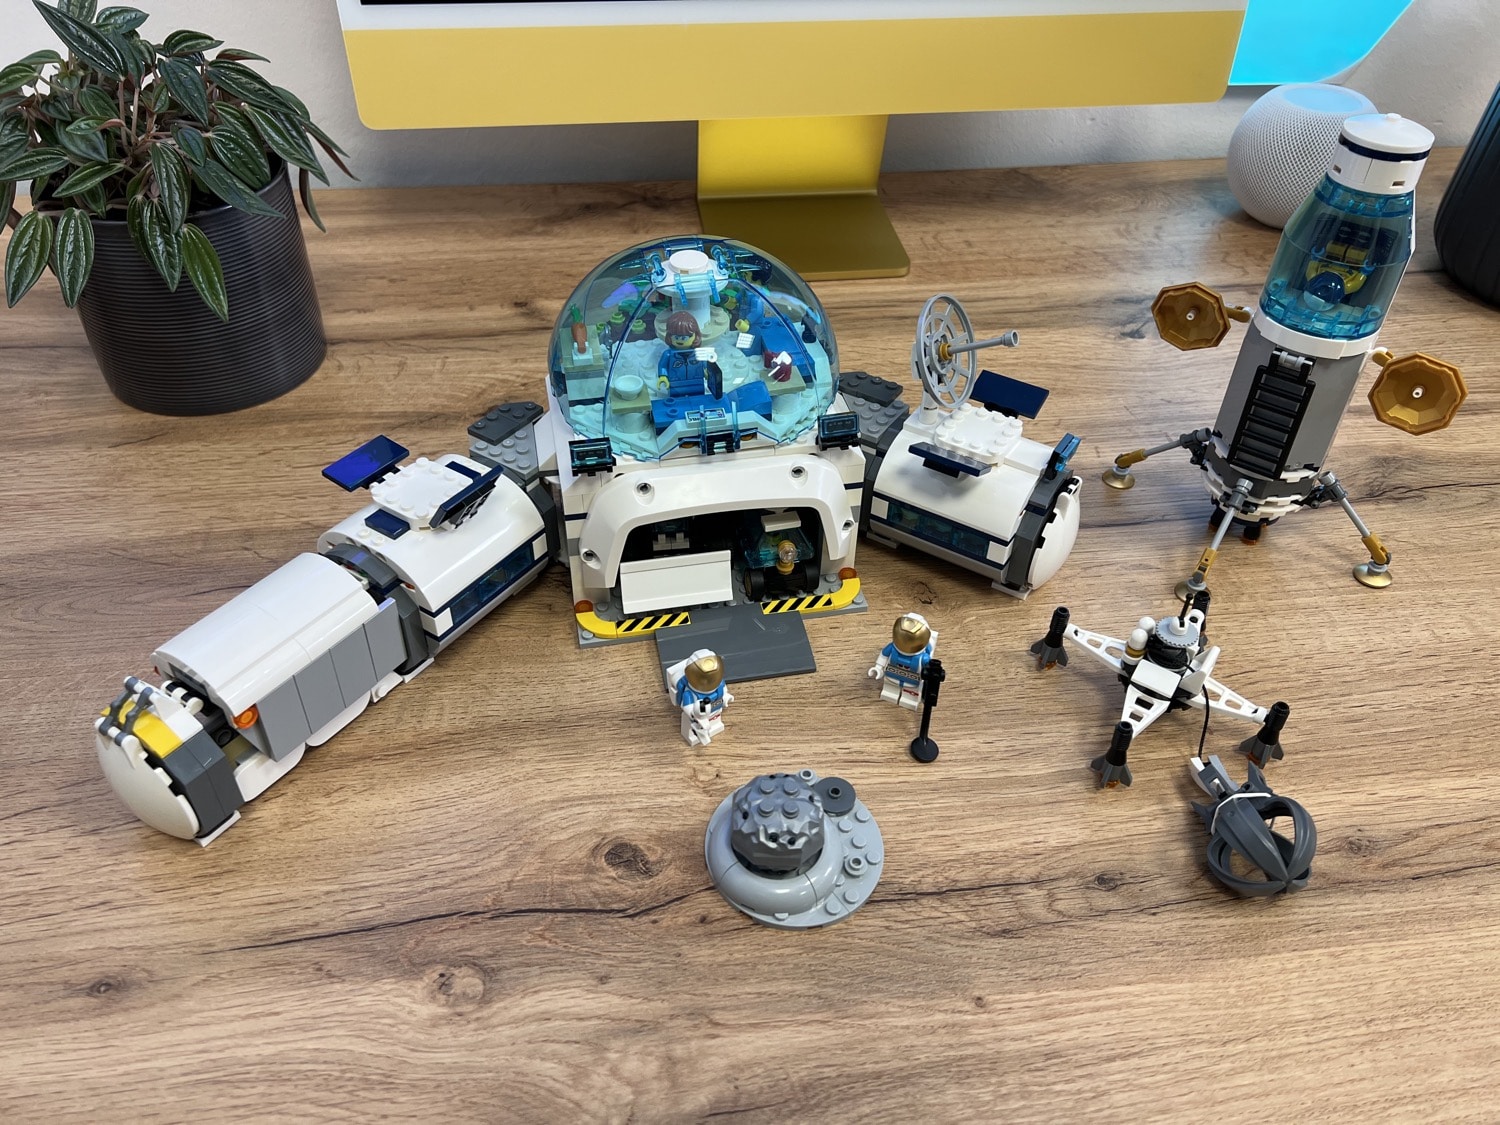 LEGO City 60350 Mond-Forschungsbasis: Dieses Set lädt zum Spielen ein